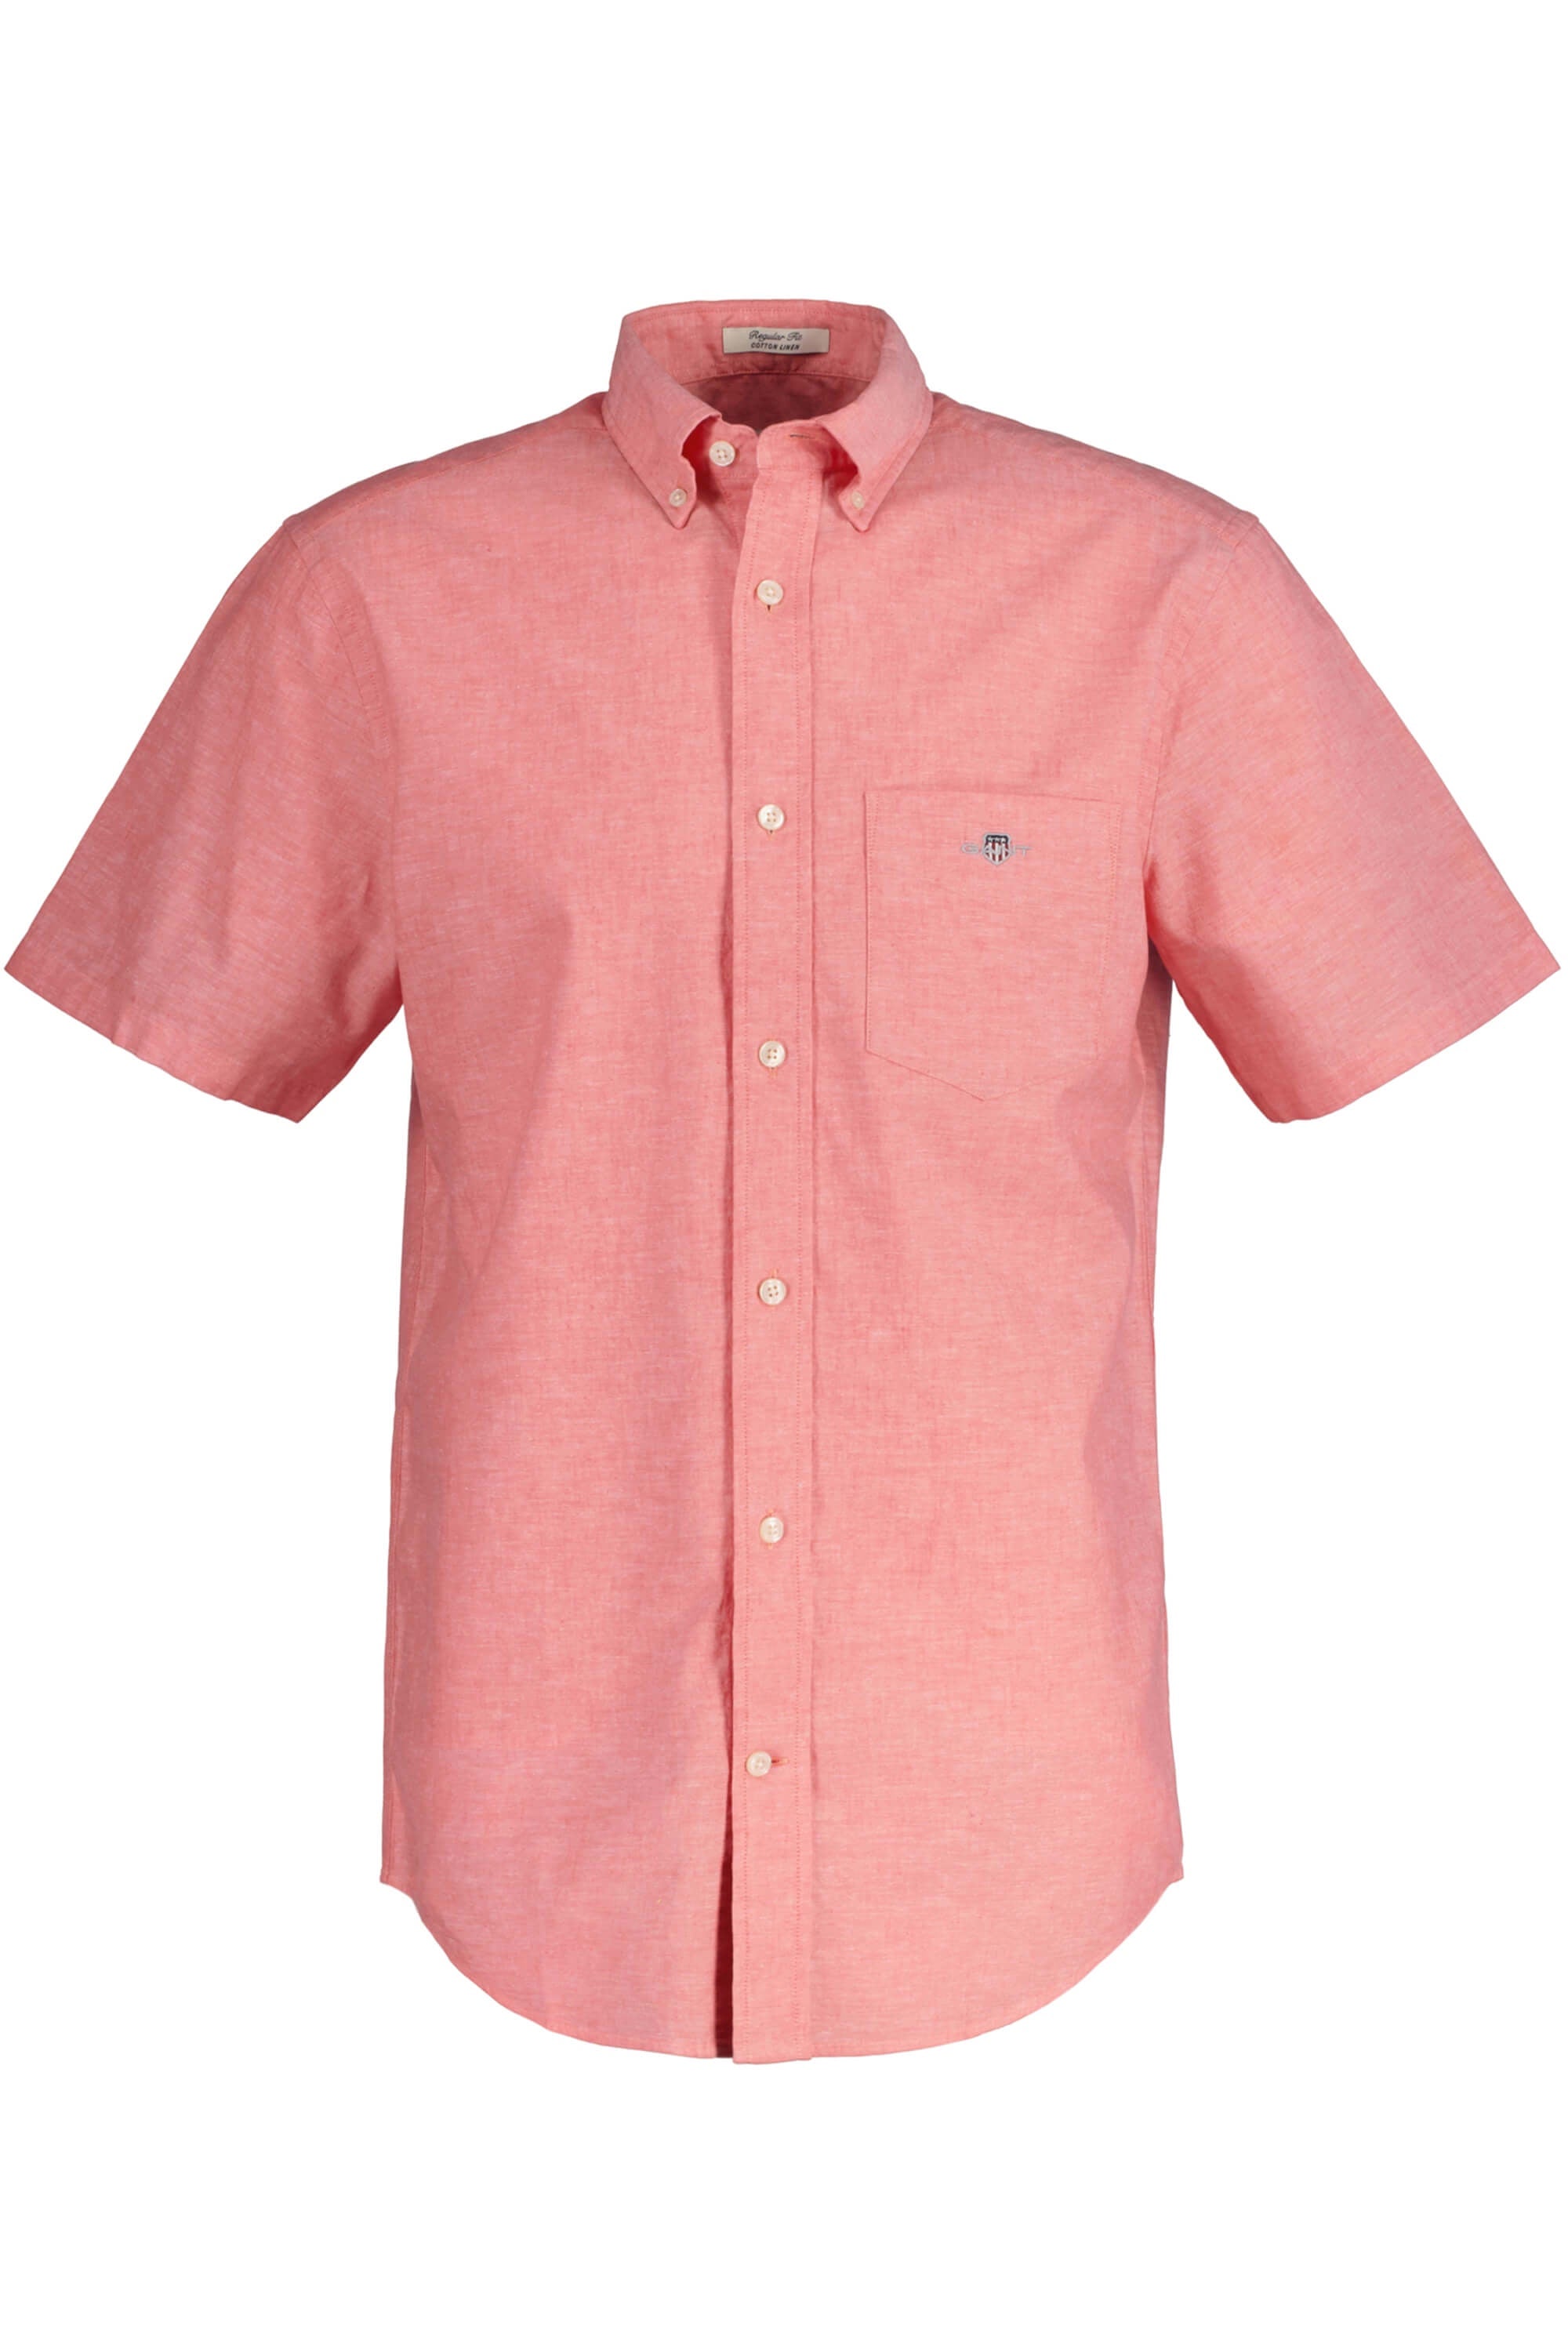 Gant Cotton Linen Shirt SS Sunset Pink